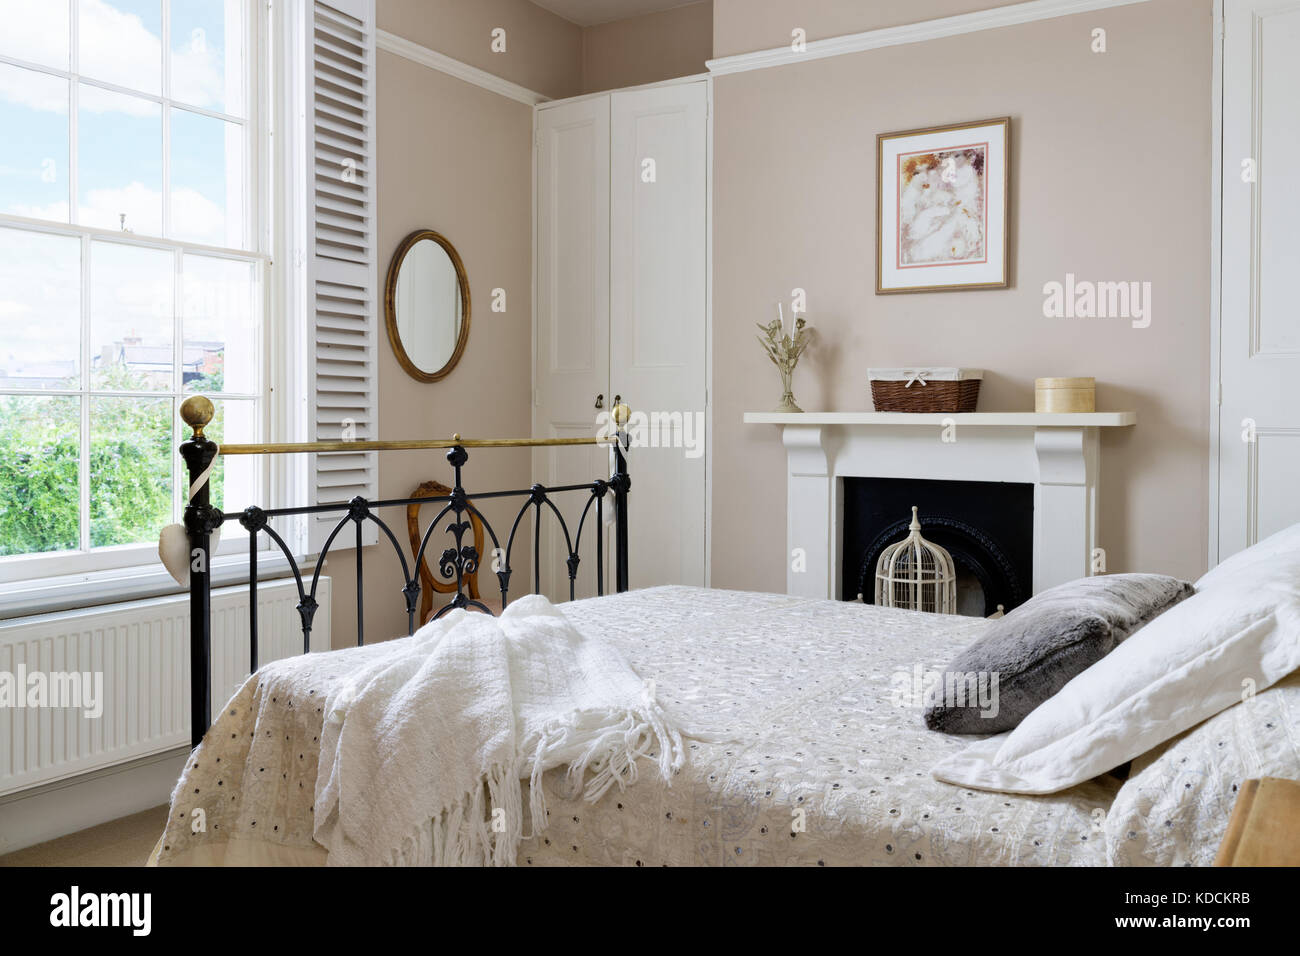 Un rinnovato la camera da letto in stile vittoriano che mostra una finestra con persiane, un caminetto e letto matrimoniale con ferro beadstead. Foto Stock